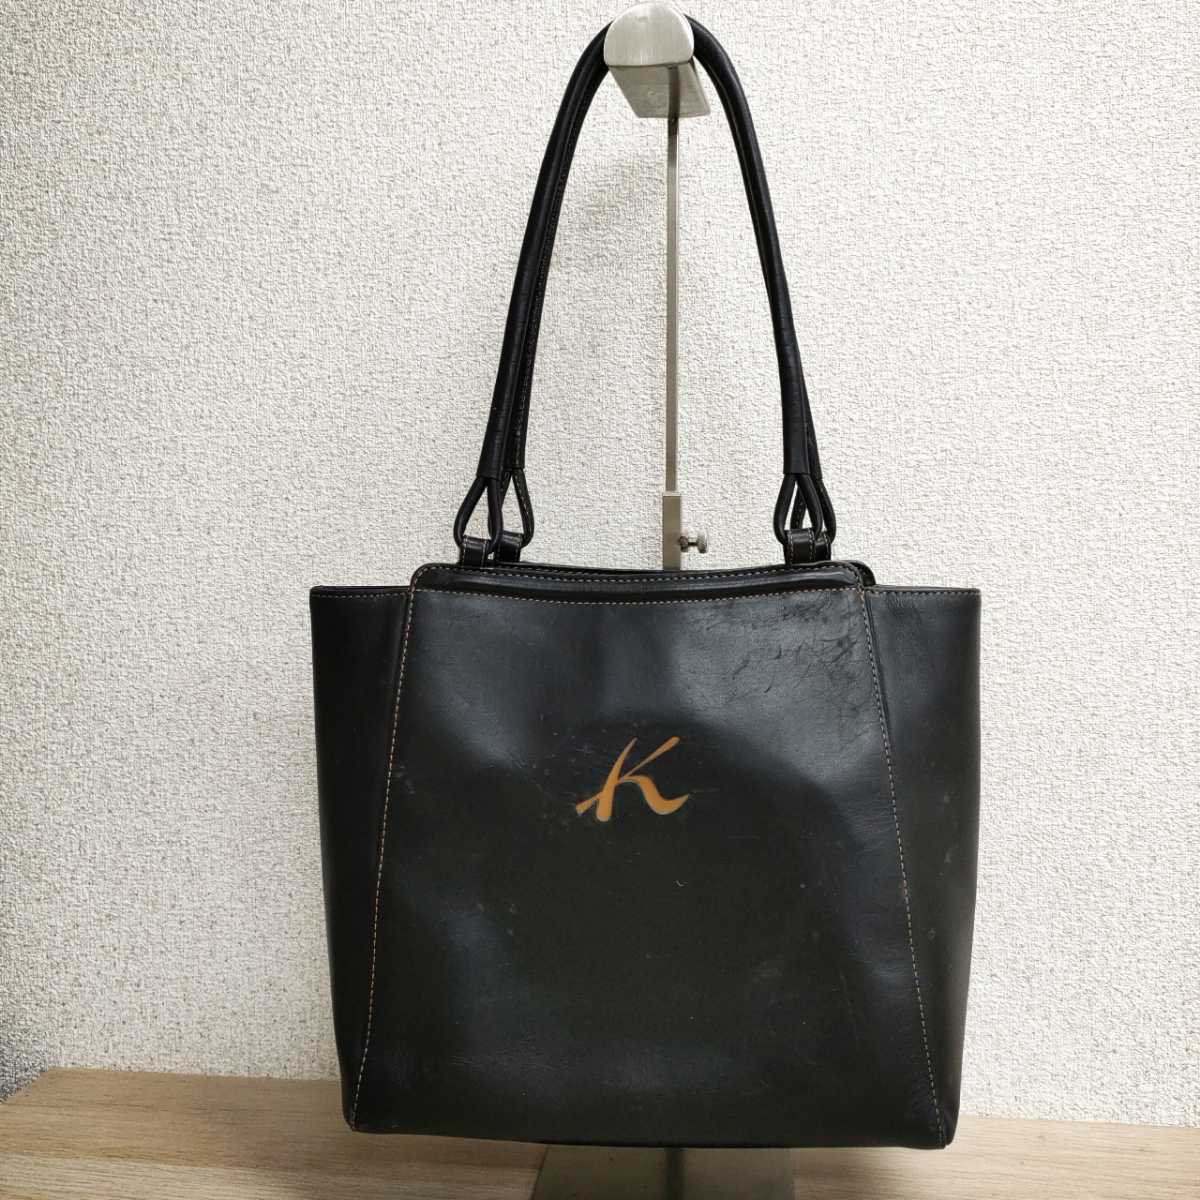 キタムラ Kitamura トートバッグ レザー ブラック 黒 革 革製品 レディース 鞄 カバン ハンドバッグ バッグ ファッション小物